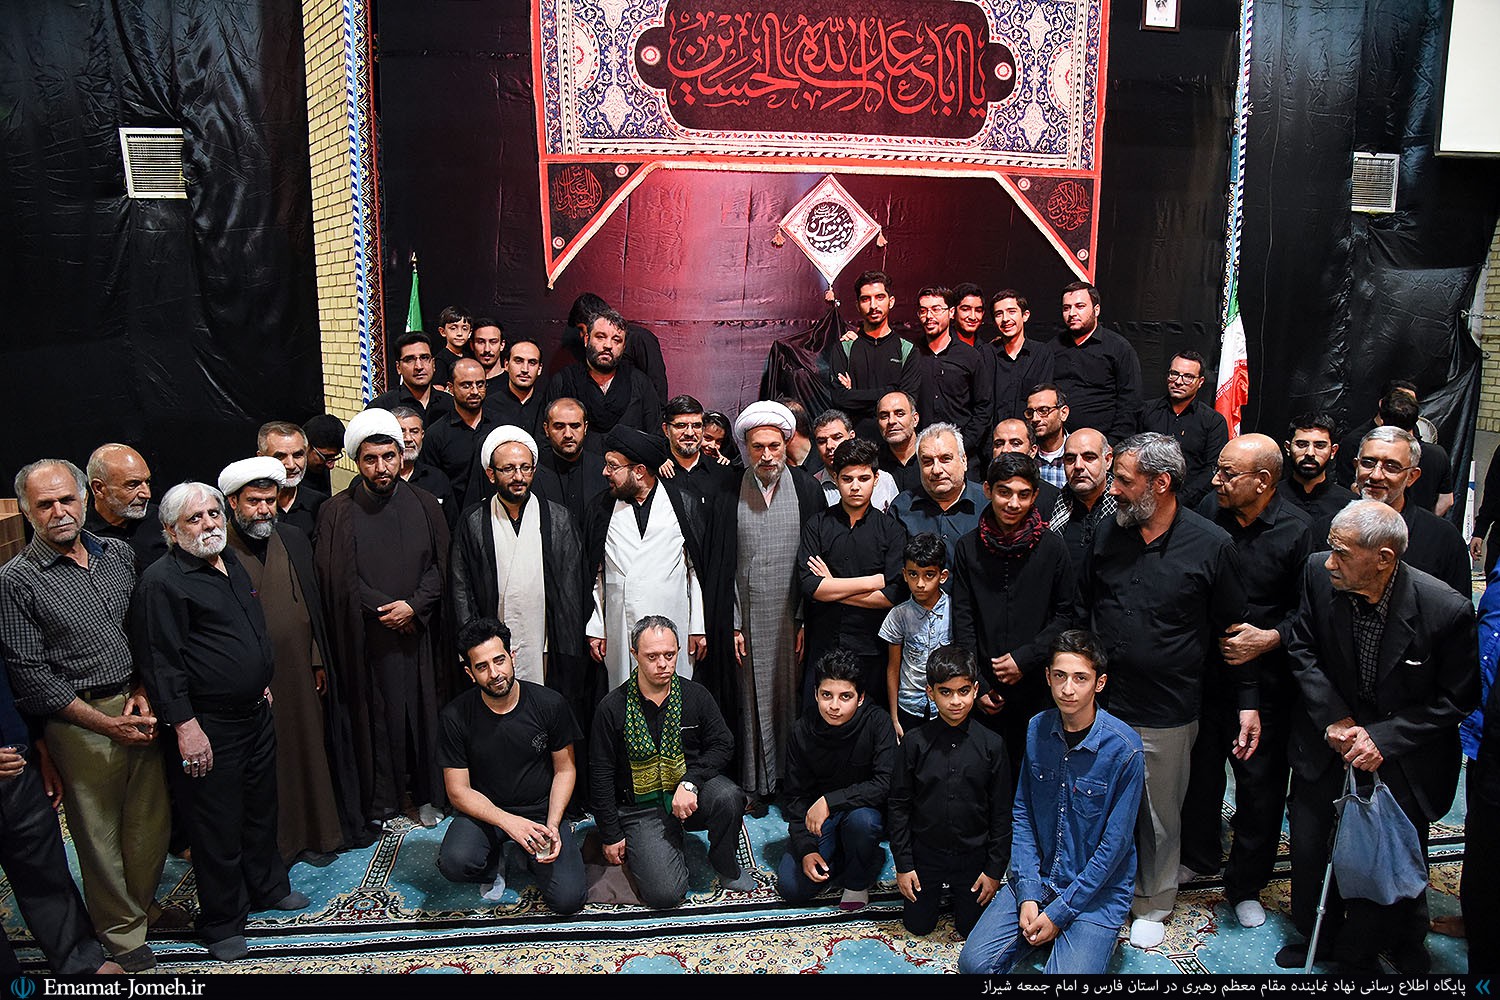 حضور آیت الله دژکام در جمع عزاداران حسینی مسجد امام حسن مجتبی(ع) آزادگان شیراز